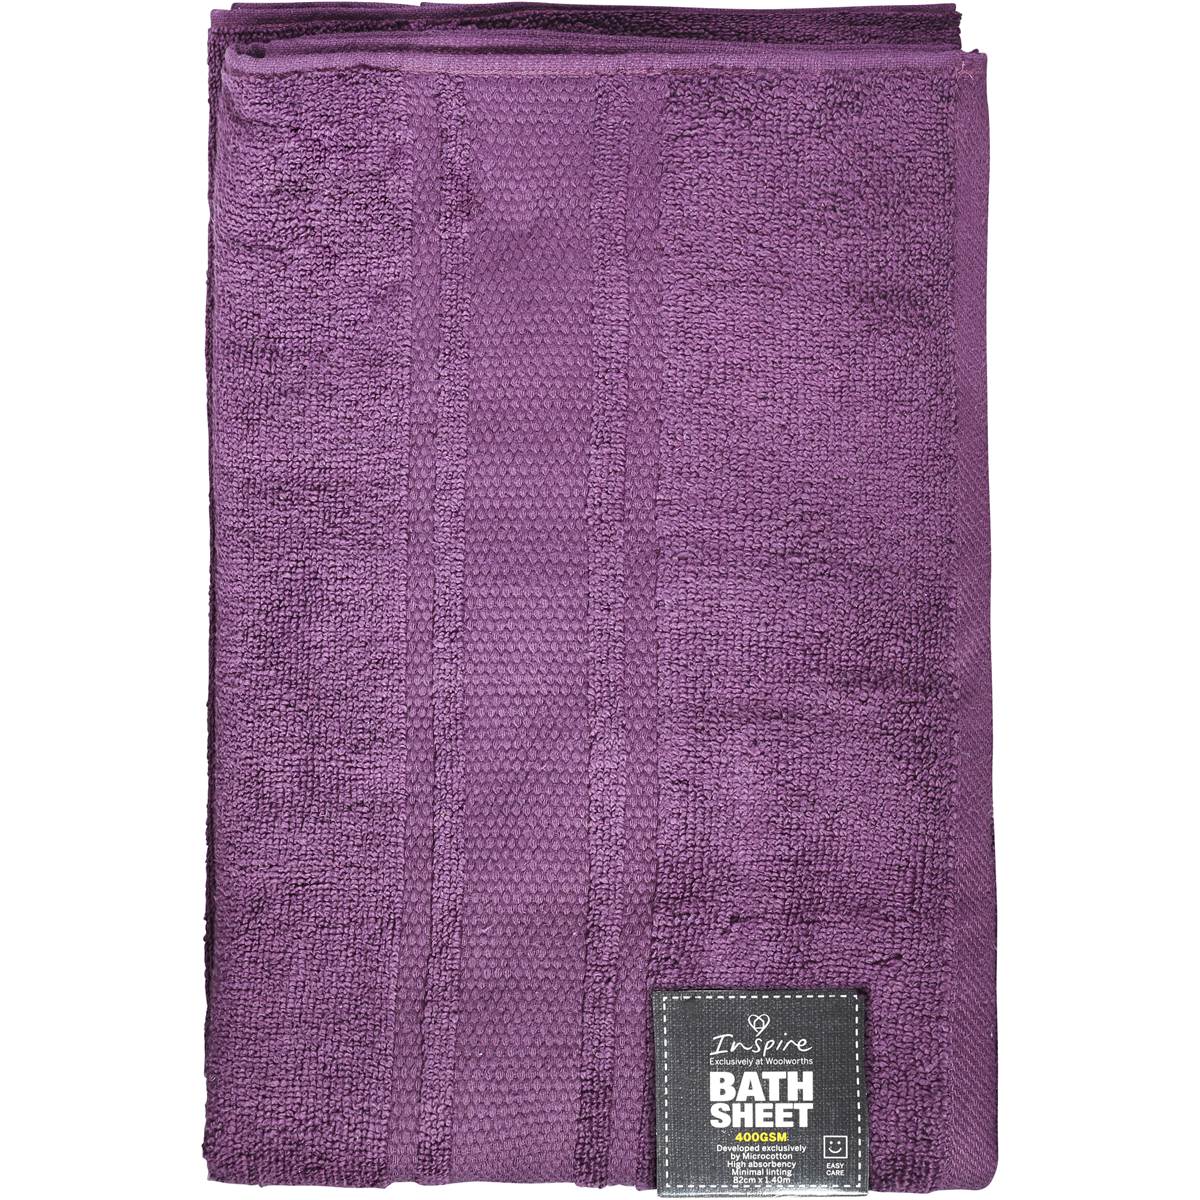 Home Essentials Bath Sheet Teal